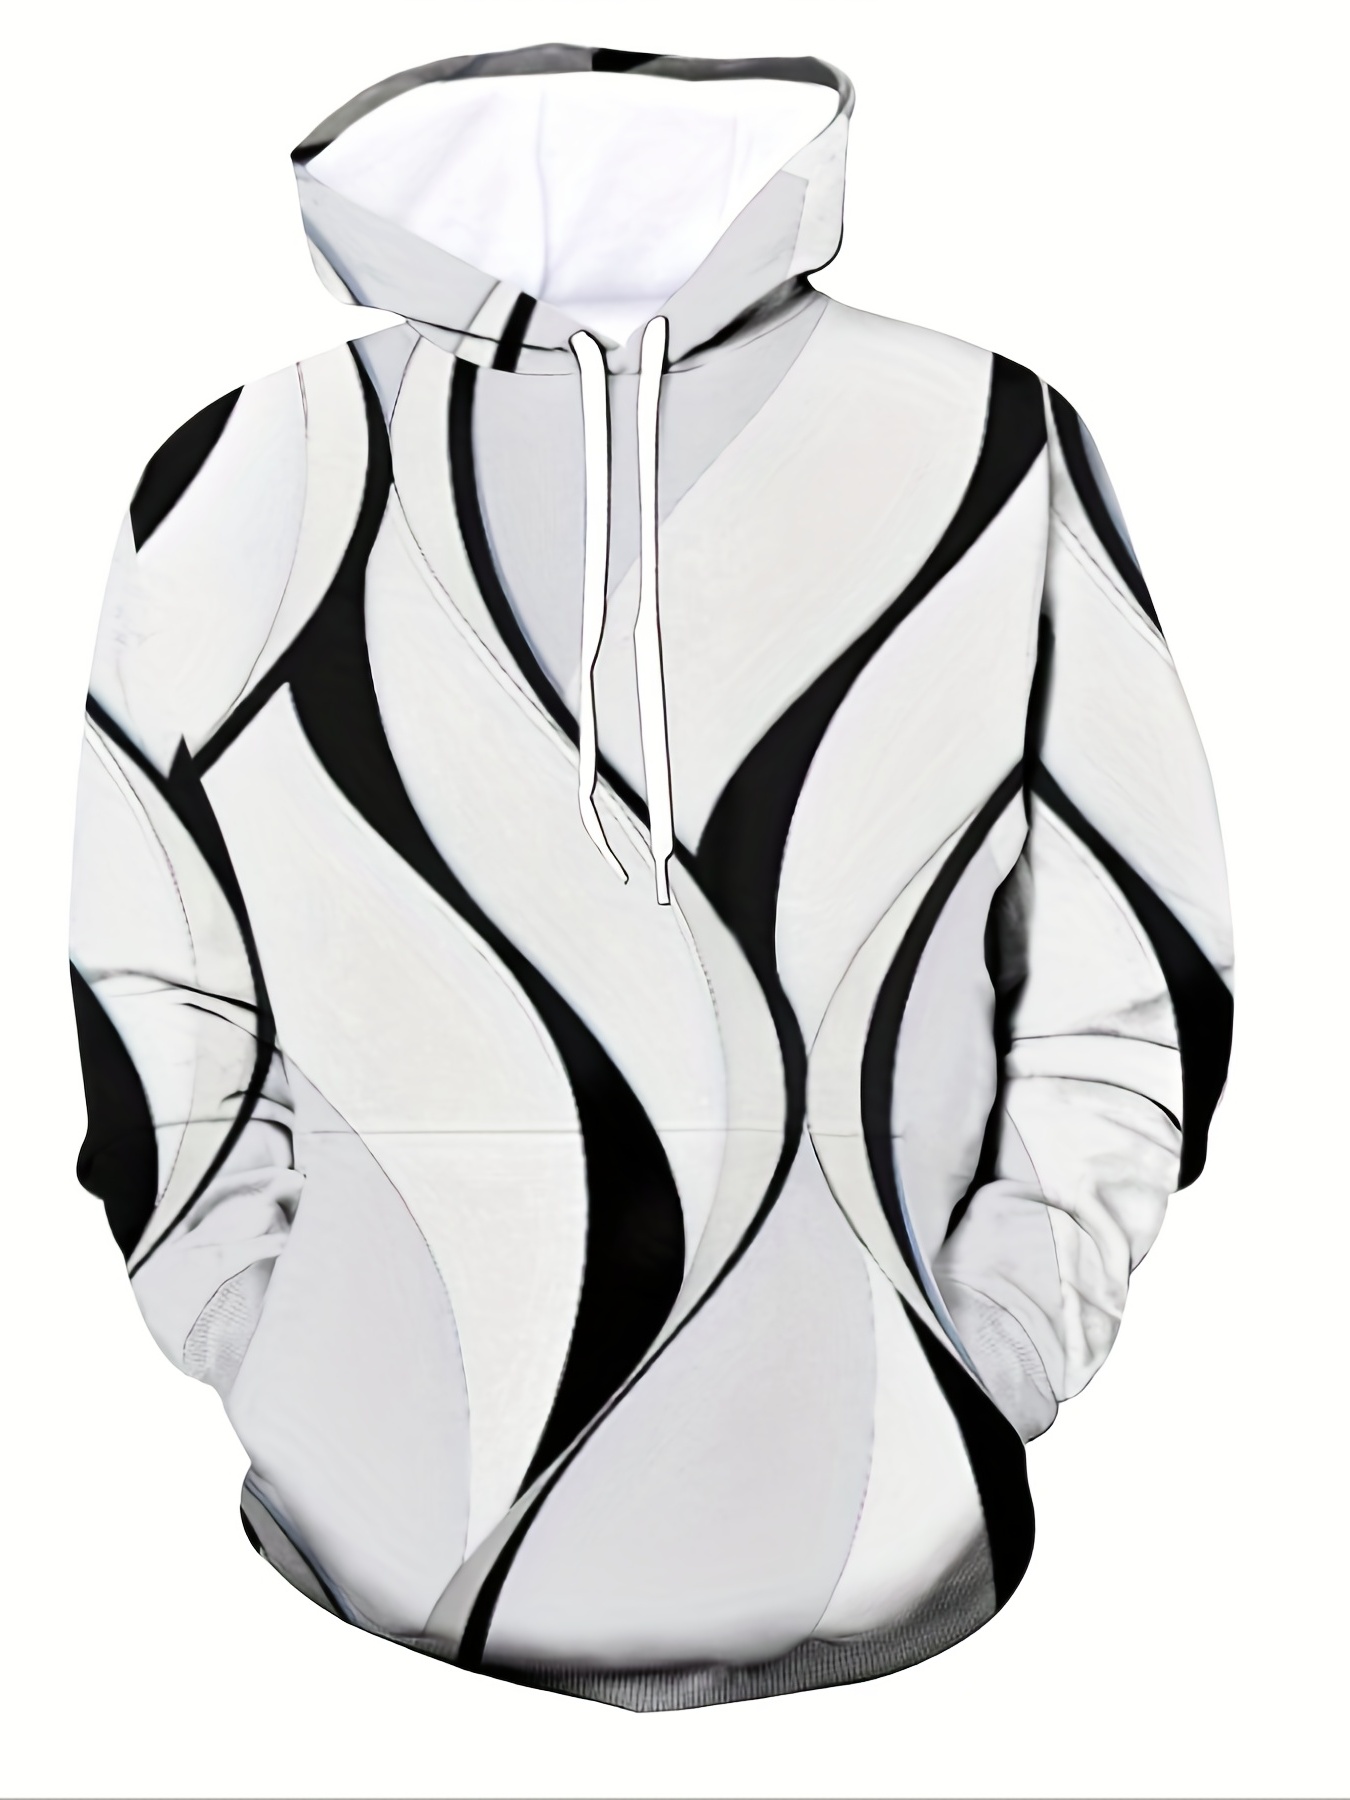 Nuevo Louis Vuitton Logo LV Impresión 3D Primavera Otoño Moda Sudadera Con  Capucha Hombres Mujeres Jersey Marca Al Aire Libre Jogging Streetwear Tops